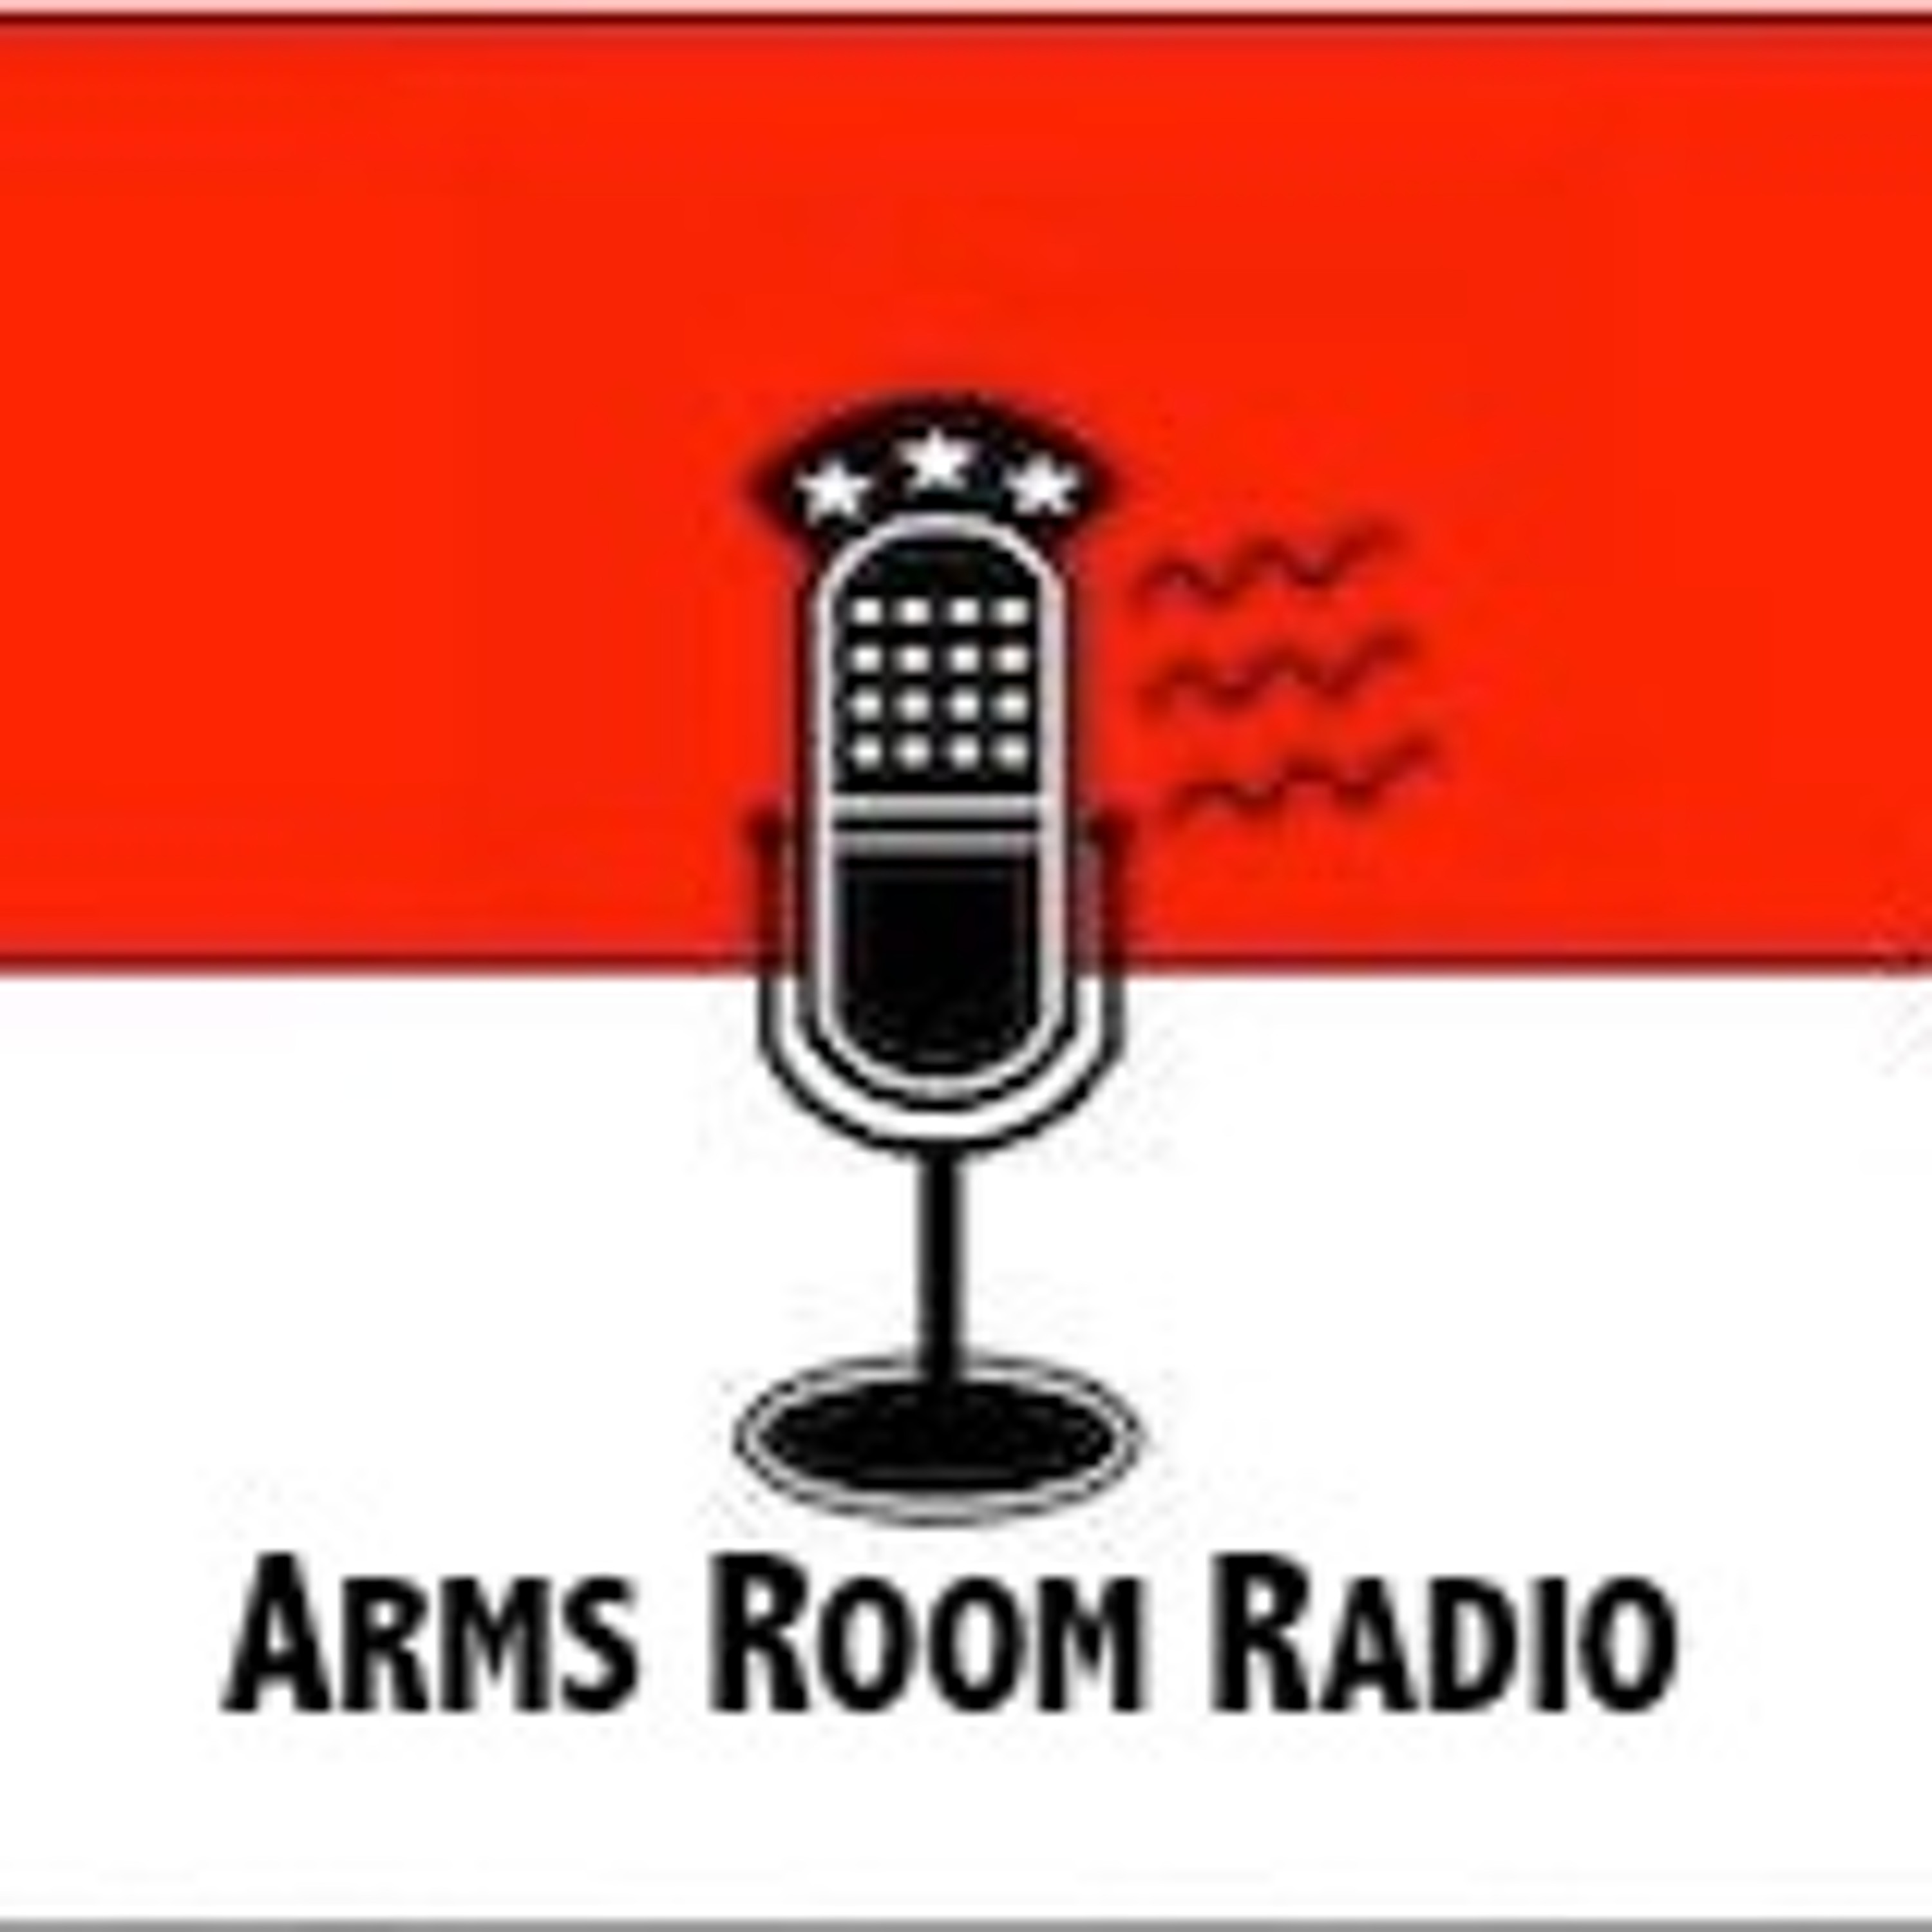 ArmsRoomRadio 11.02.19 Craig DeLuz, Patrick Collins